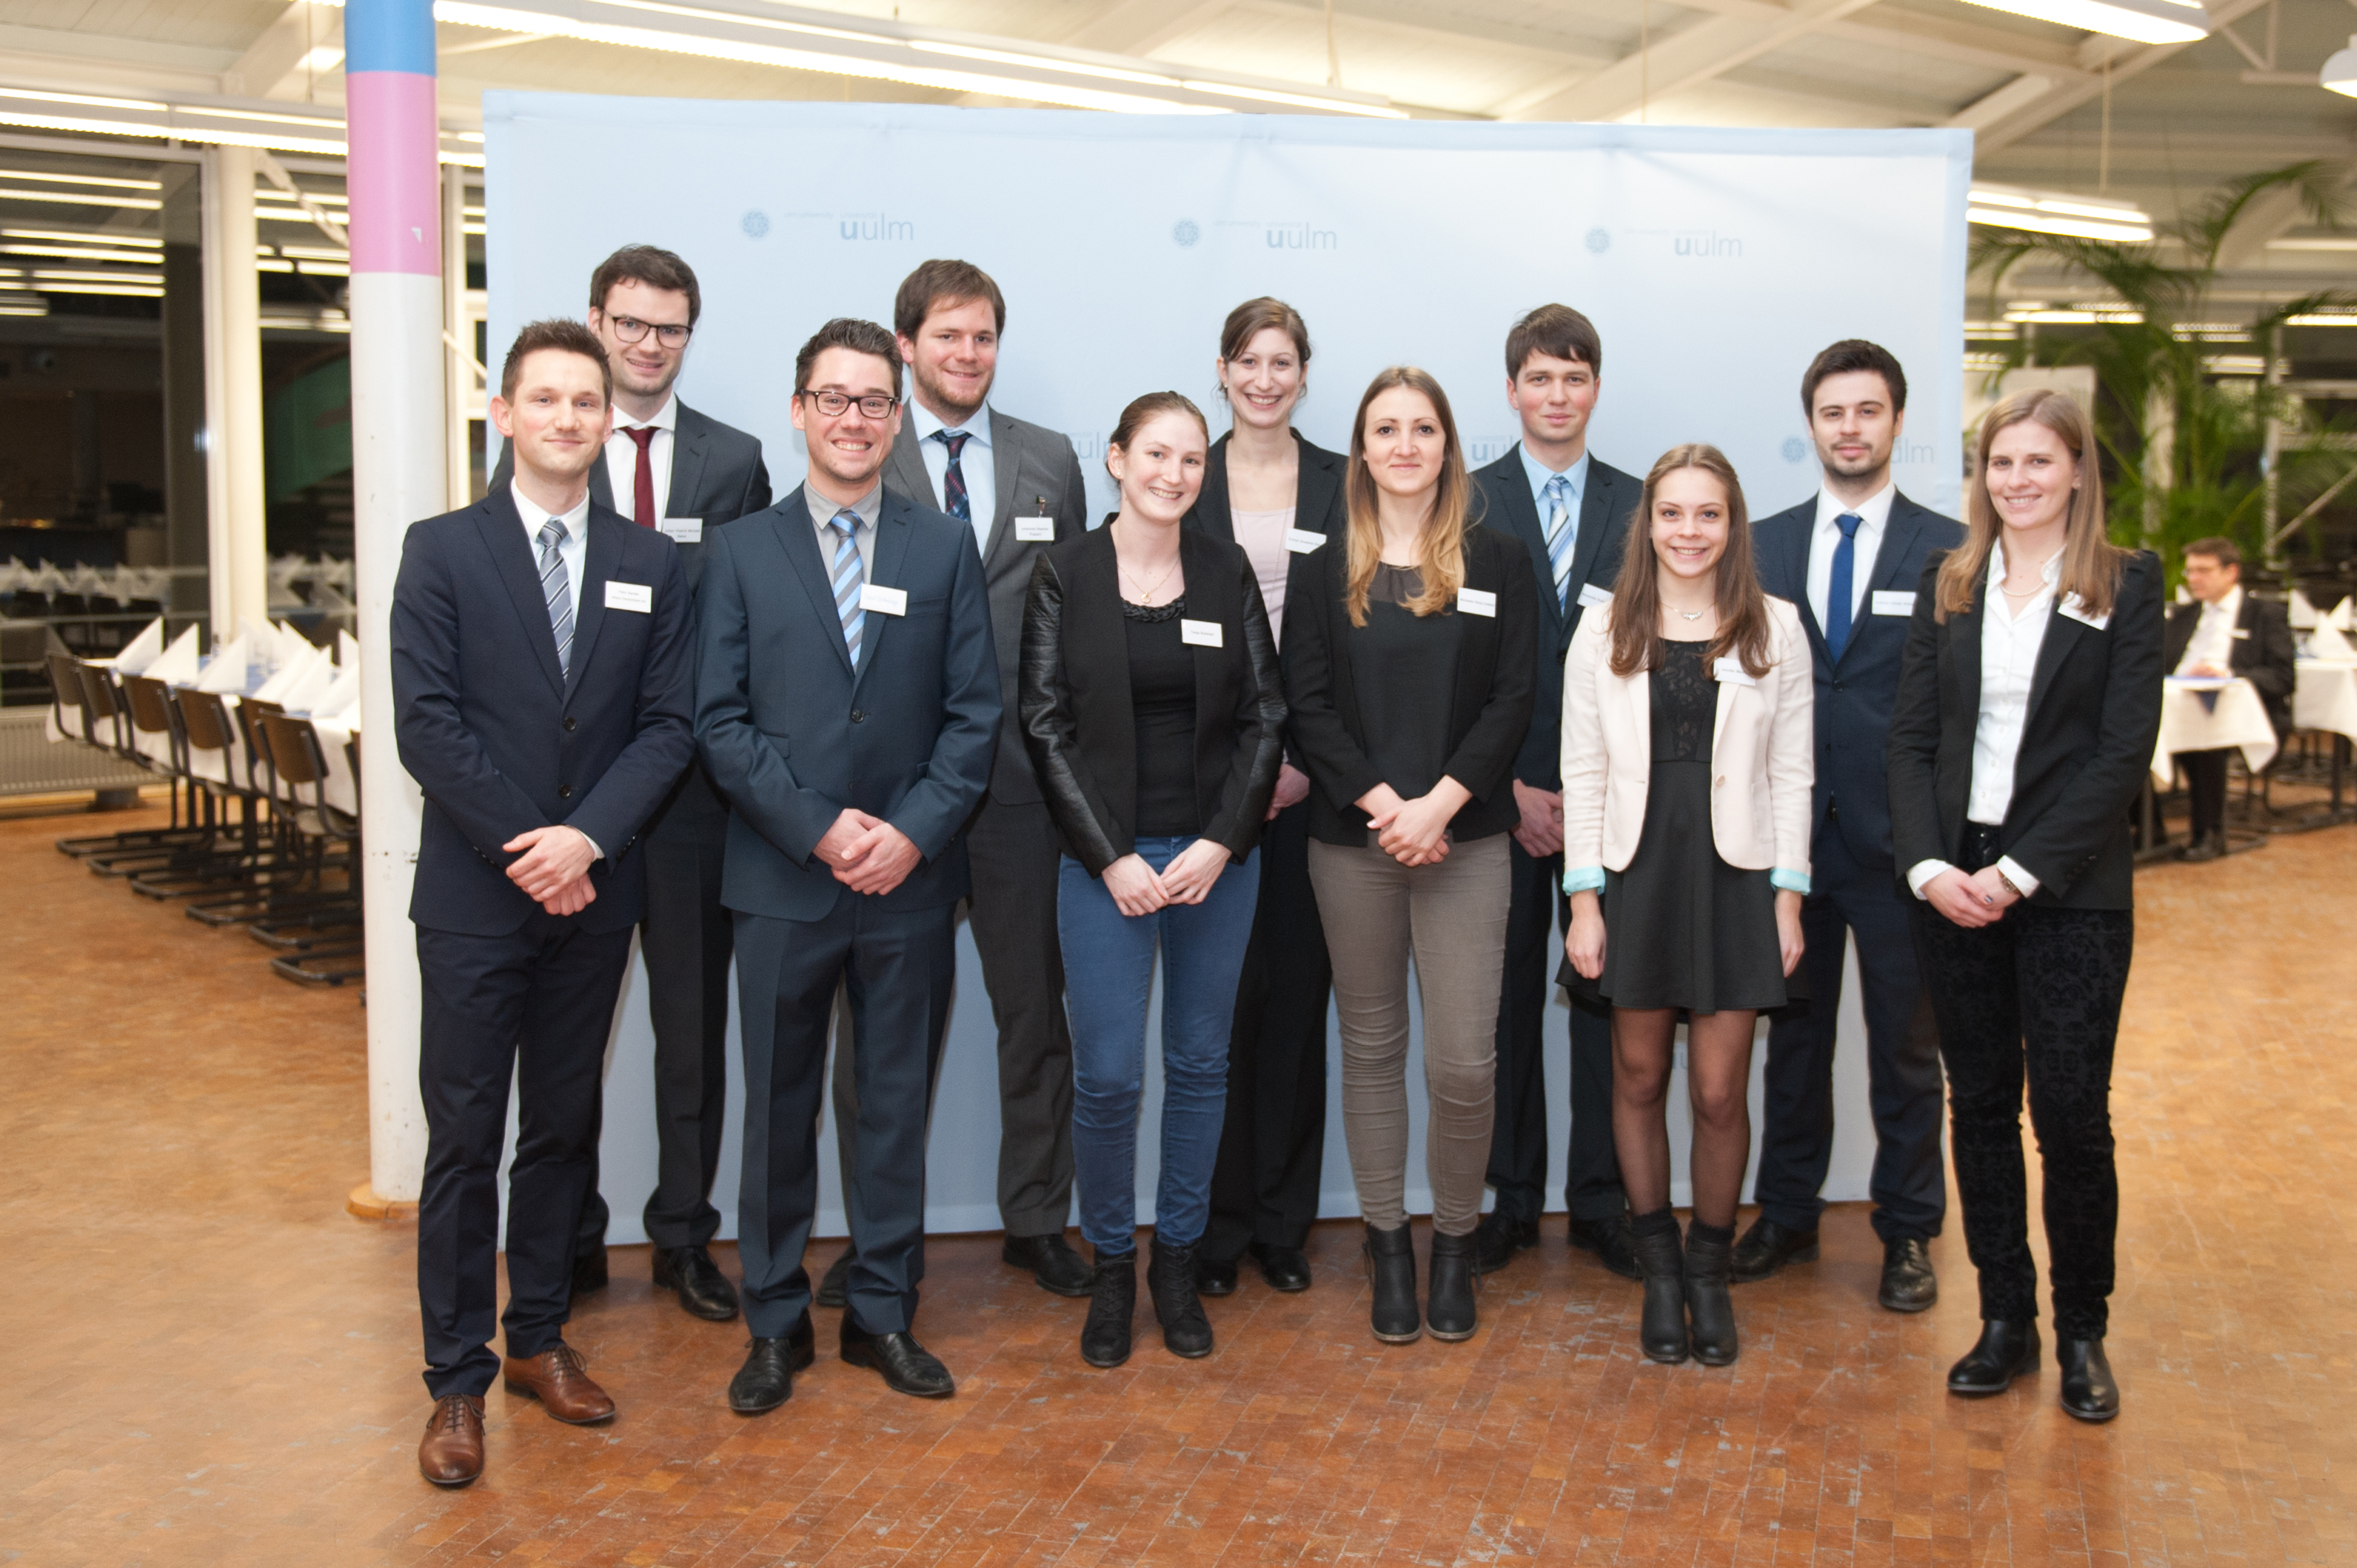 Herr Sander (l.v.) und Frau Vogl (r.v.) mit Stipendiaten der Allianz Deutschland AG bei der Vergabefeier der Deutschlandstipendien 2015 an der Universität Ulm